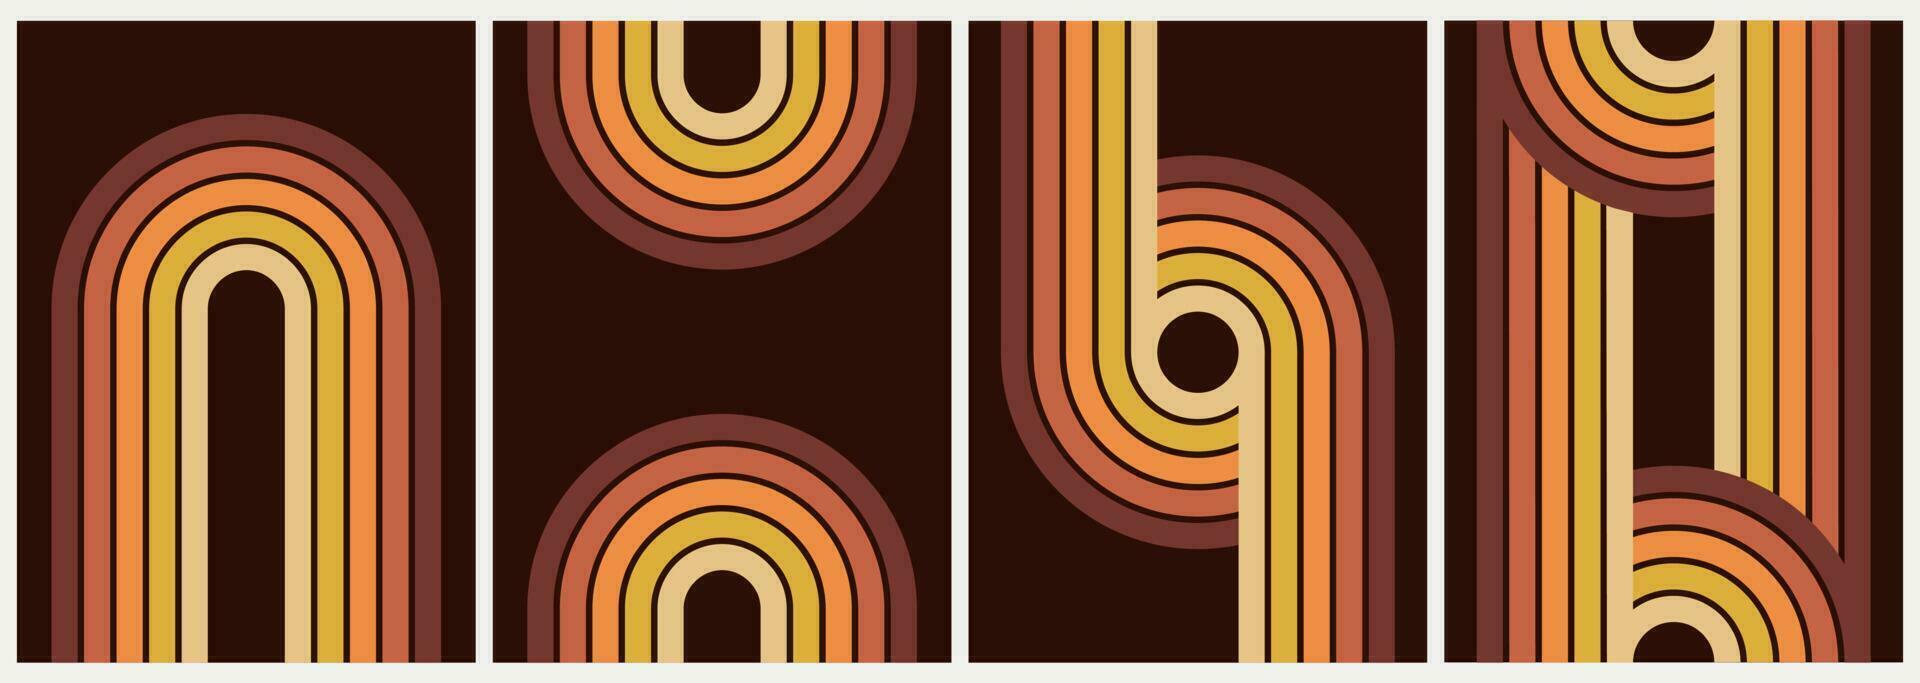 abstrait moderne géométrique minimaliste affiches avec Facile formes dans Années 70 rétro style. vecteur